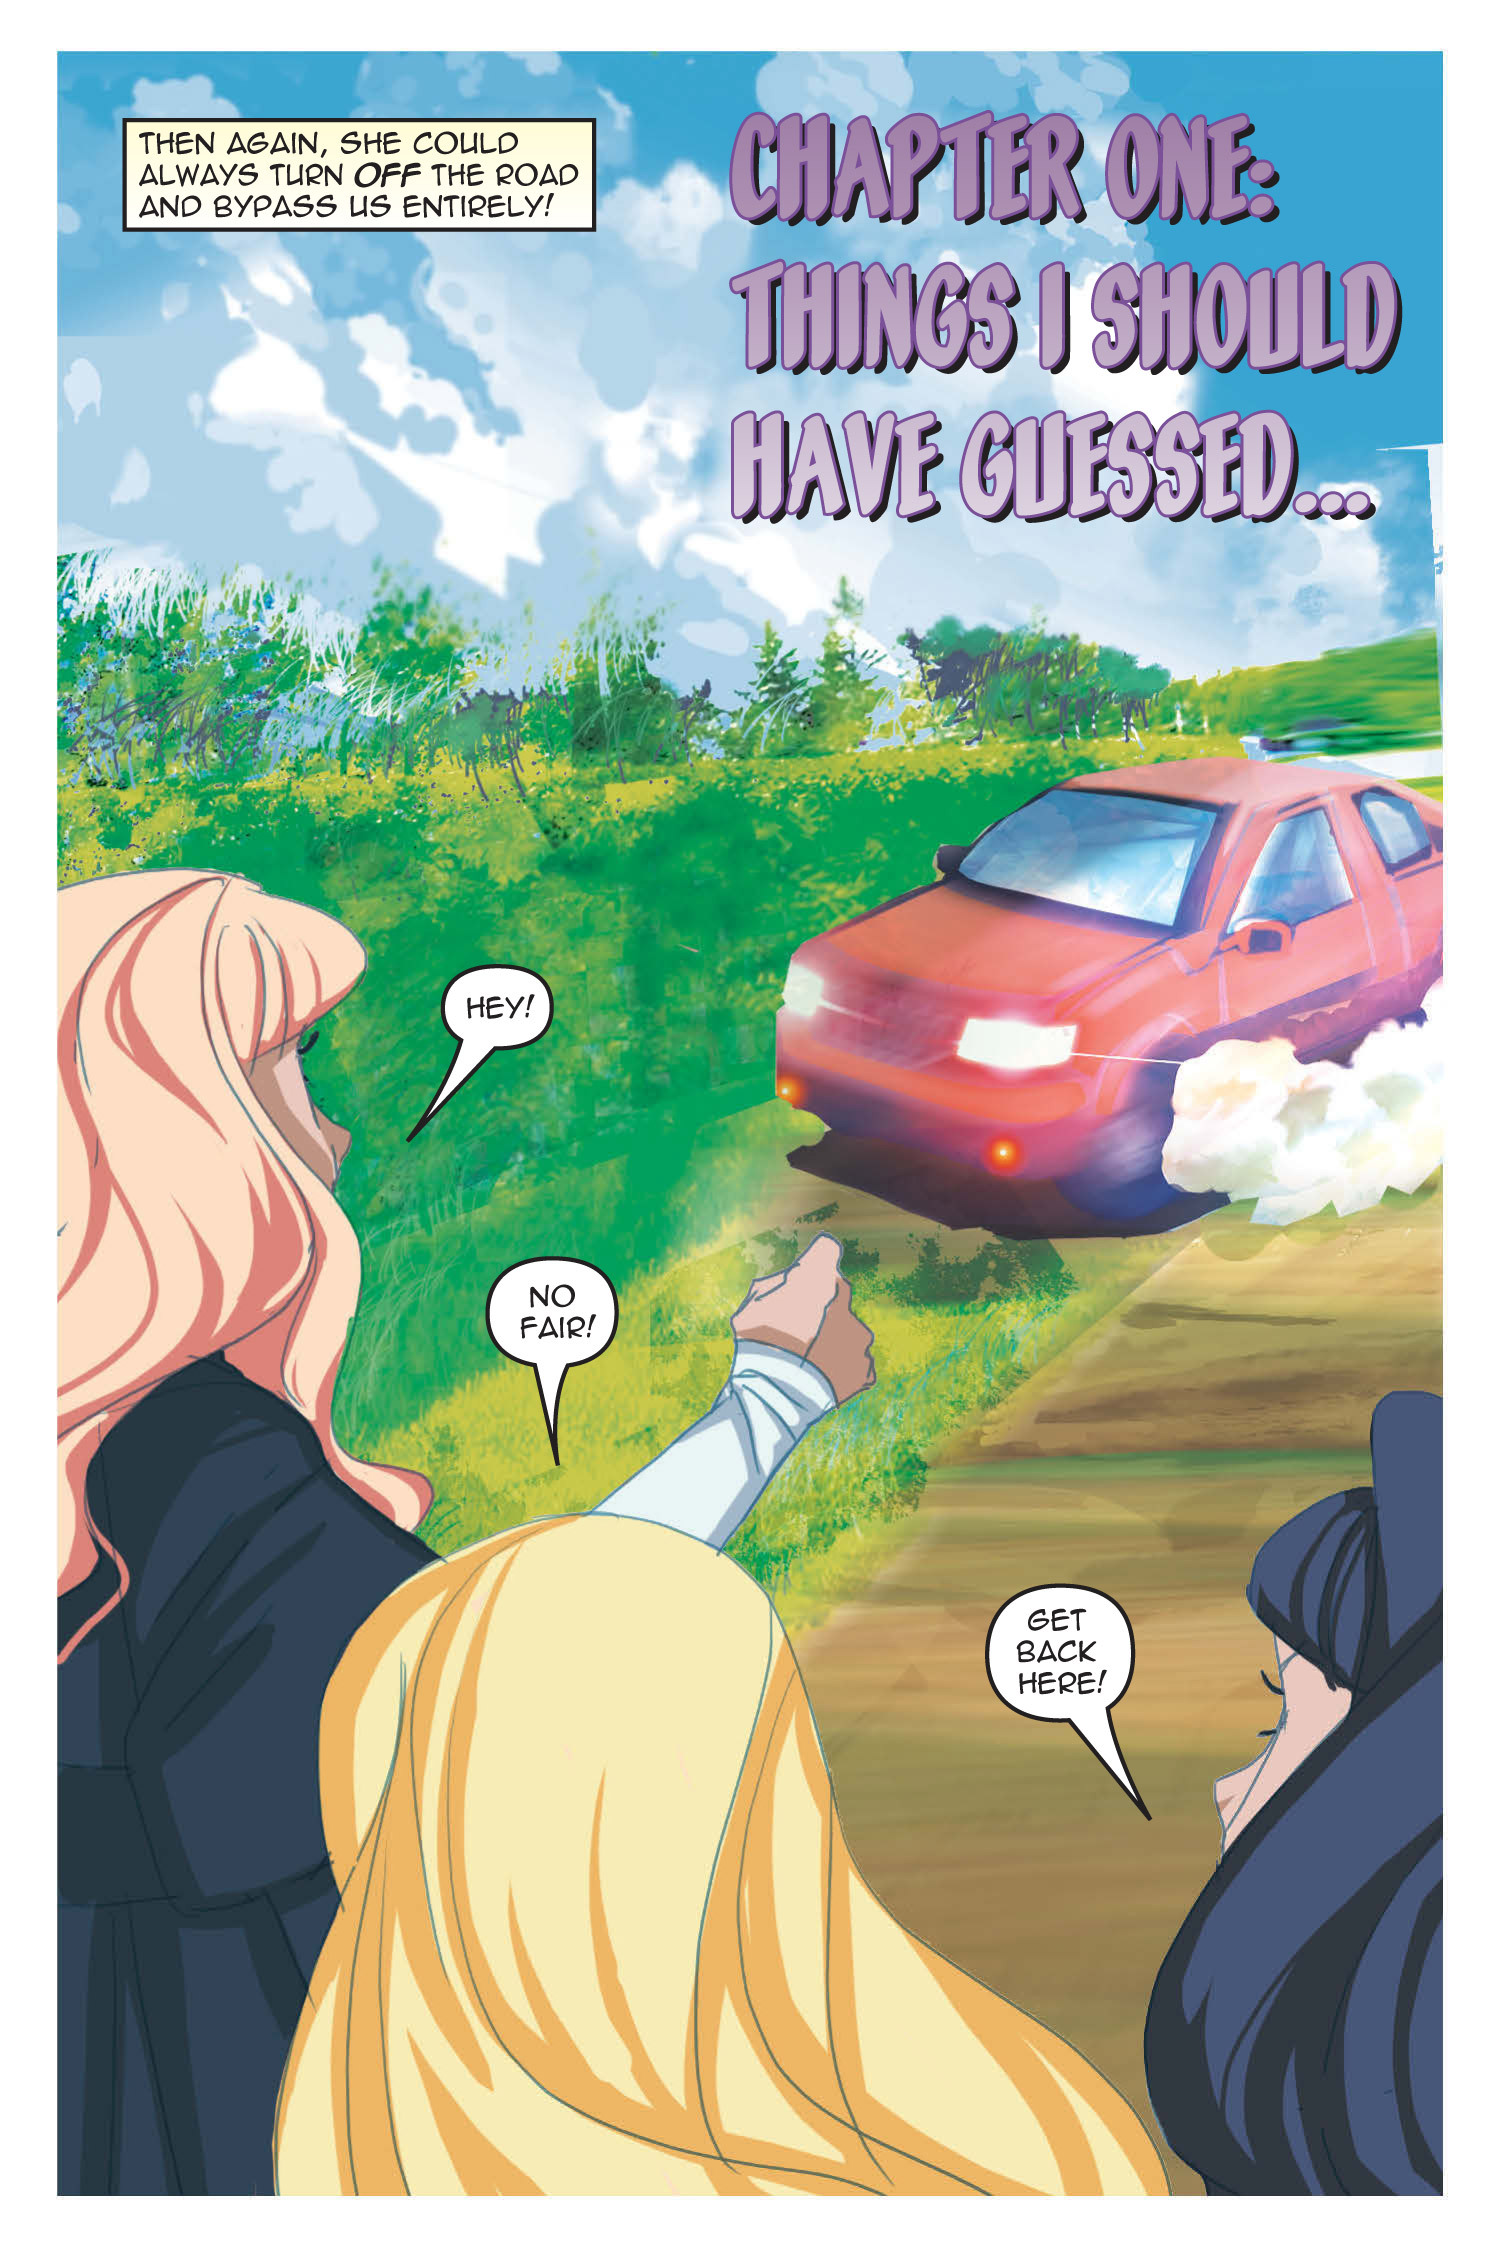 Read online Nancy Drew comic -  Issue #21 - 8